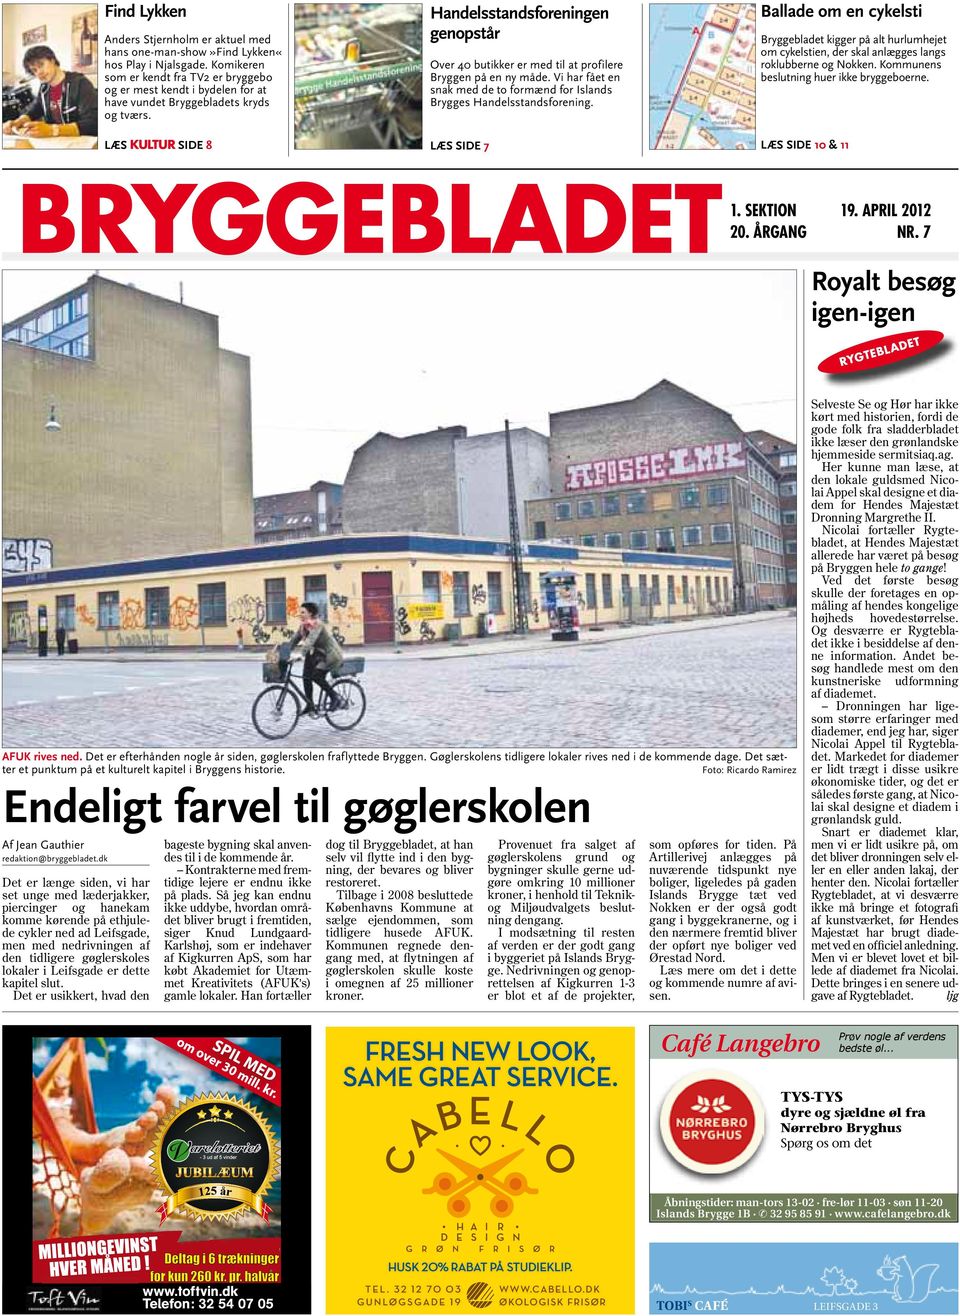 Læs KULTUR Side 8 Handelsstandsforeningen genopstår Over 40 butikker er med til at profilere Bryggen på en ny måde. Vi har fået en snak med de to formænd for Islands Brygges Handelsstandsforening.